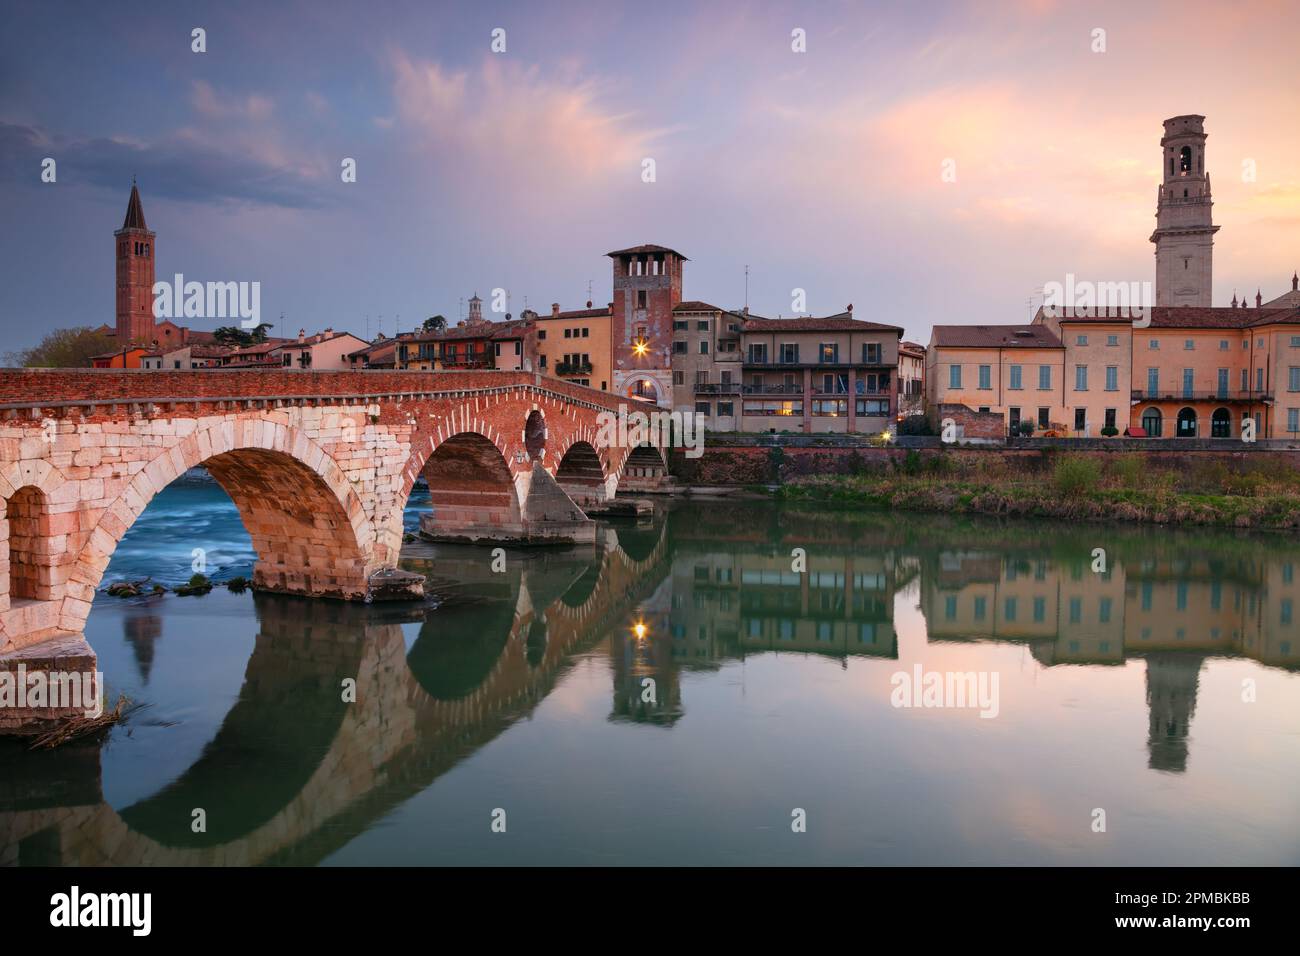 Verona, Italia. Immagine della città di Verona con il Ponte di pietra sul fiume Adige al tramonto. Foto Stock